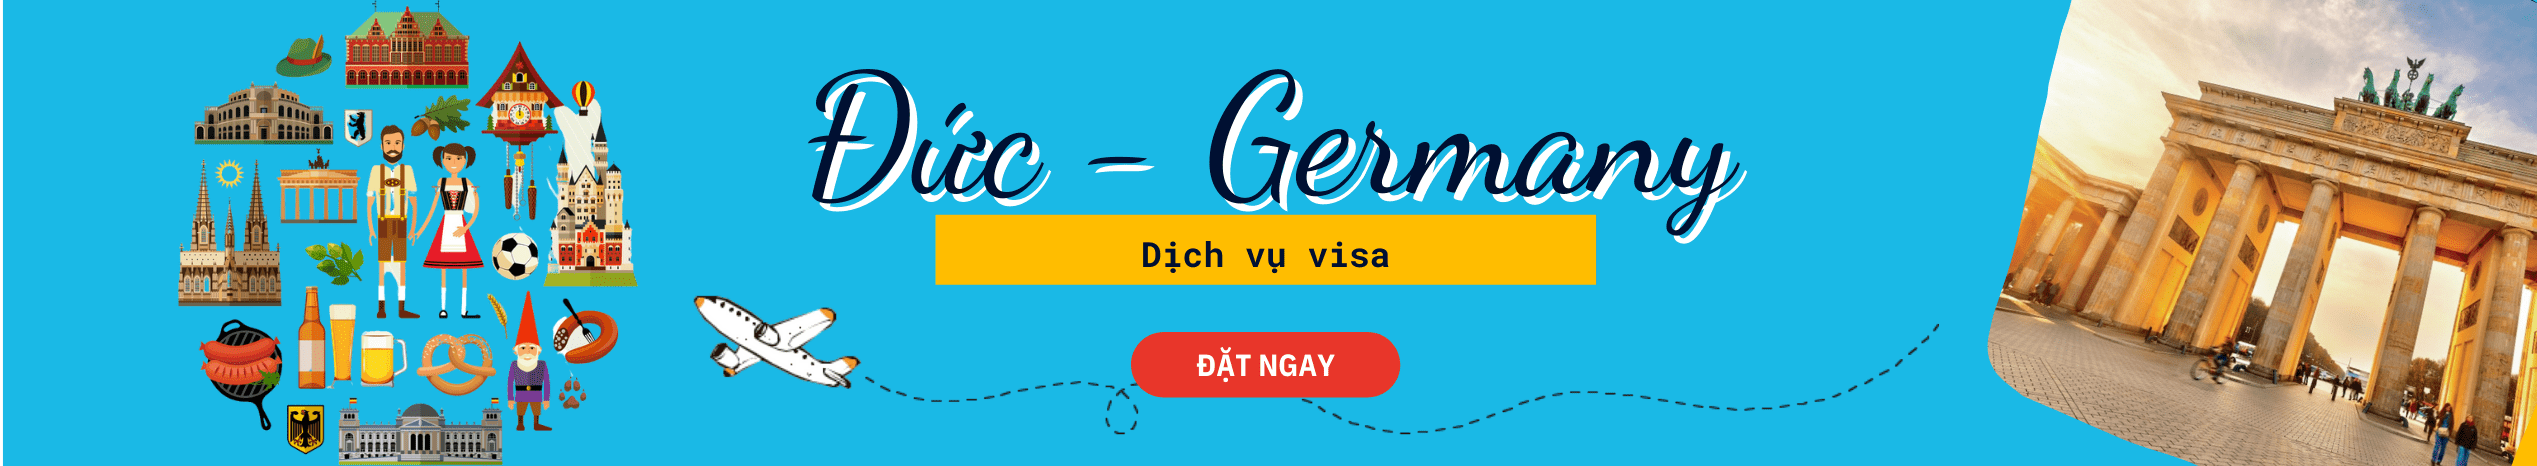 Dịch vụ hỗ trợ xin Visa Đức thăm thân, công tác